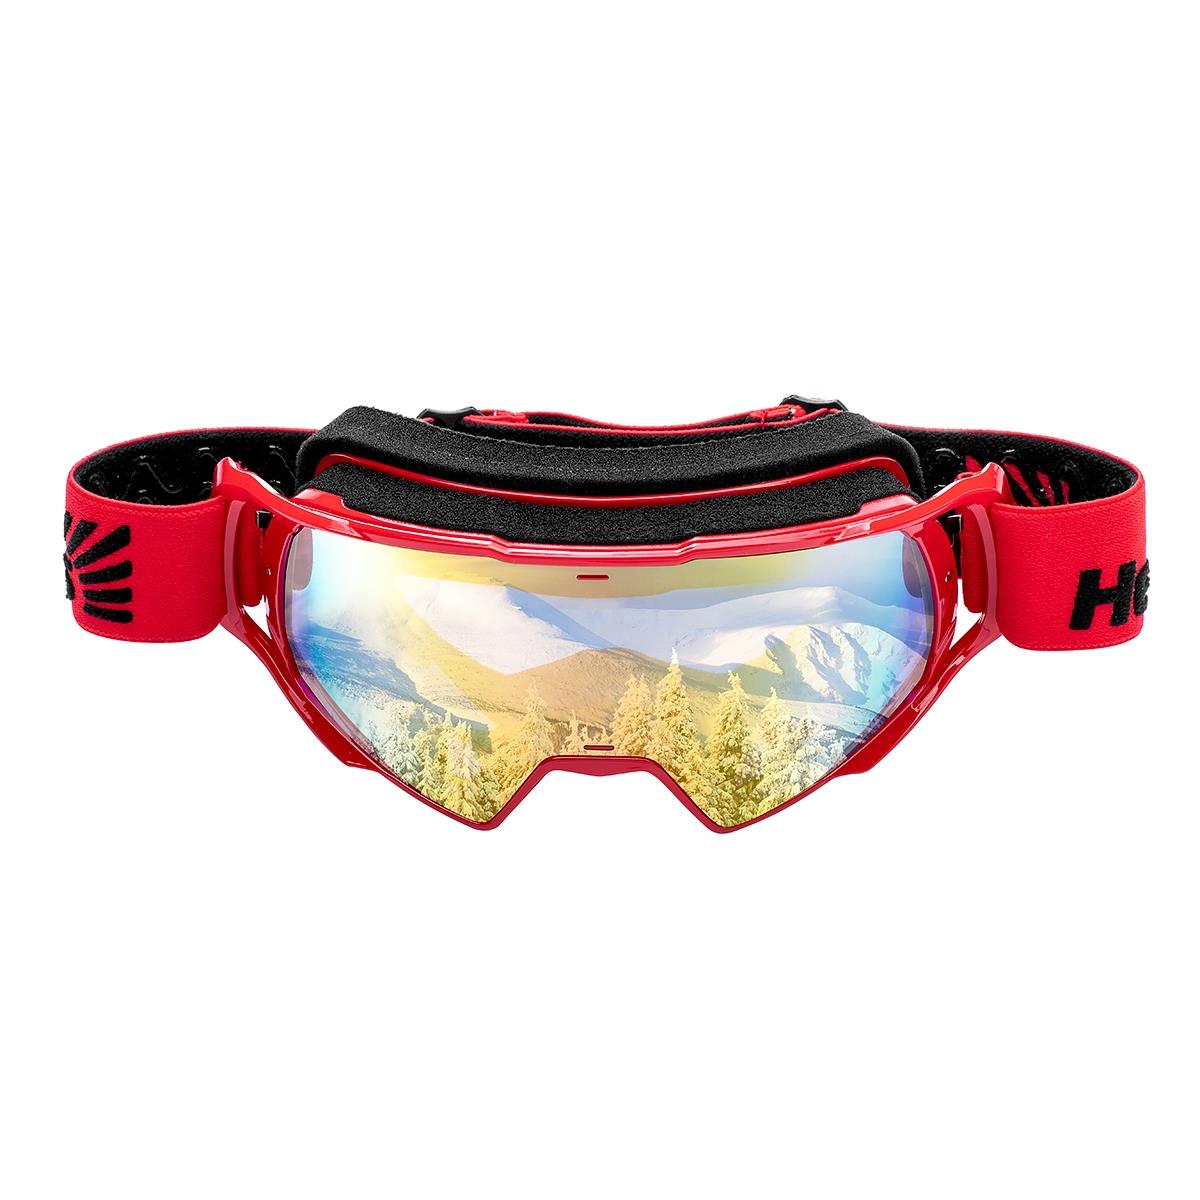 Очки горнолыжные HS-MT-023 Helios очки полумаска для плавания с берушами детские uv защита